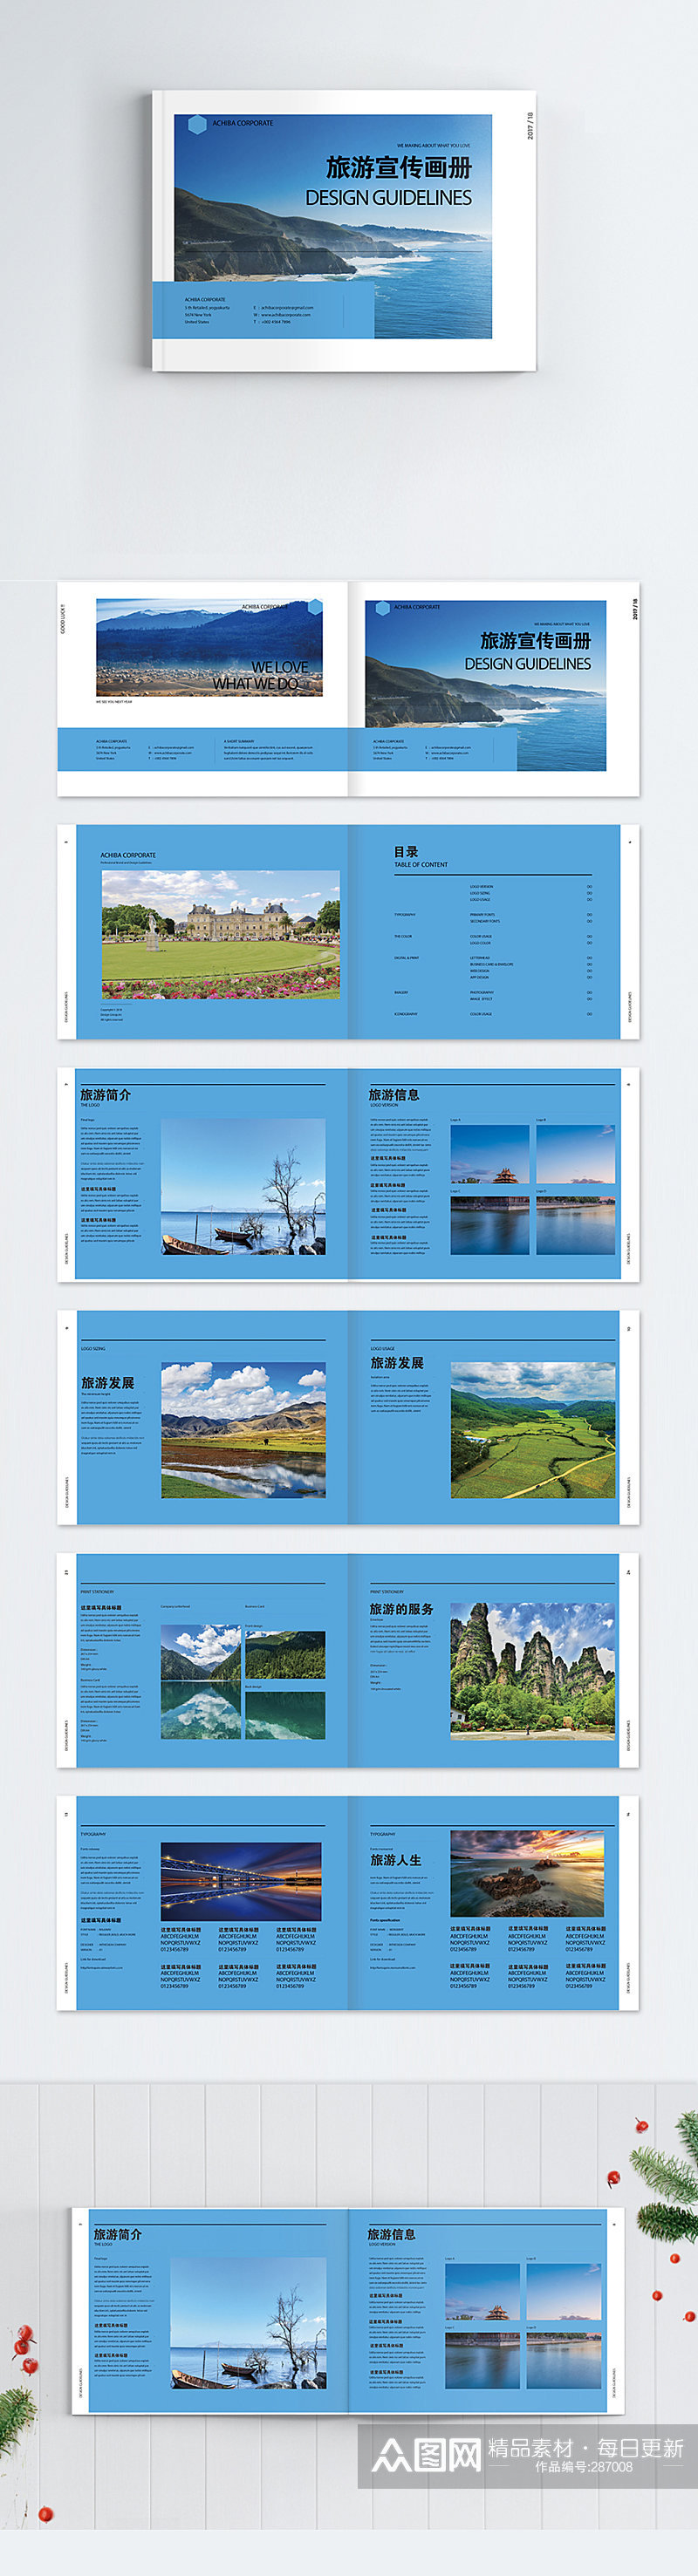 蓝色旅游画册整套户外宣传册素材